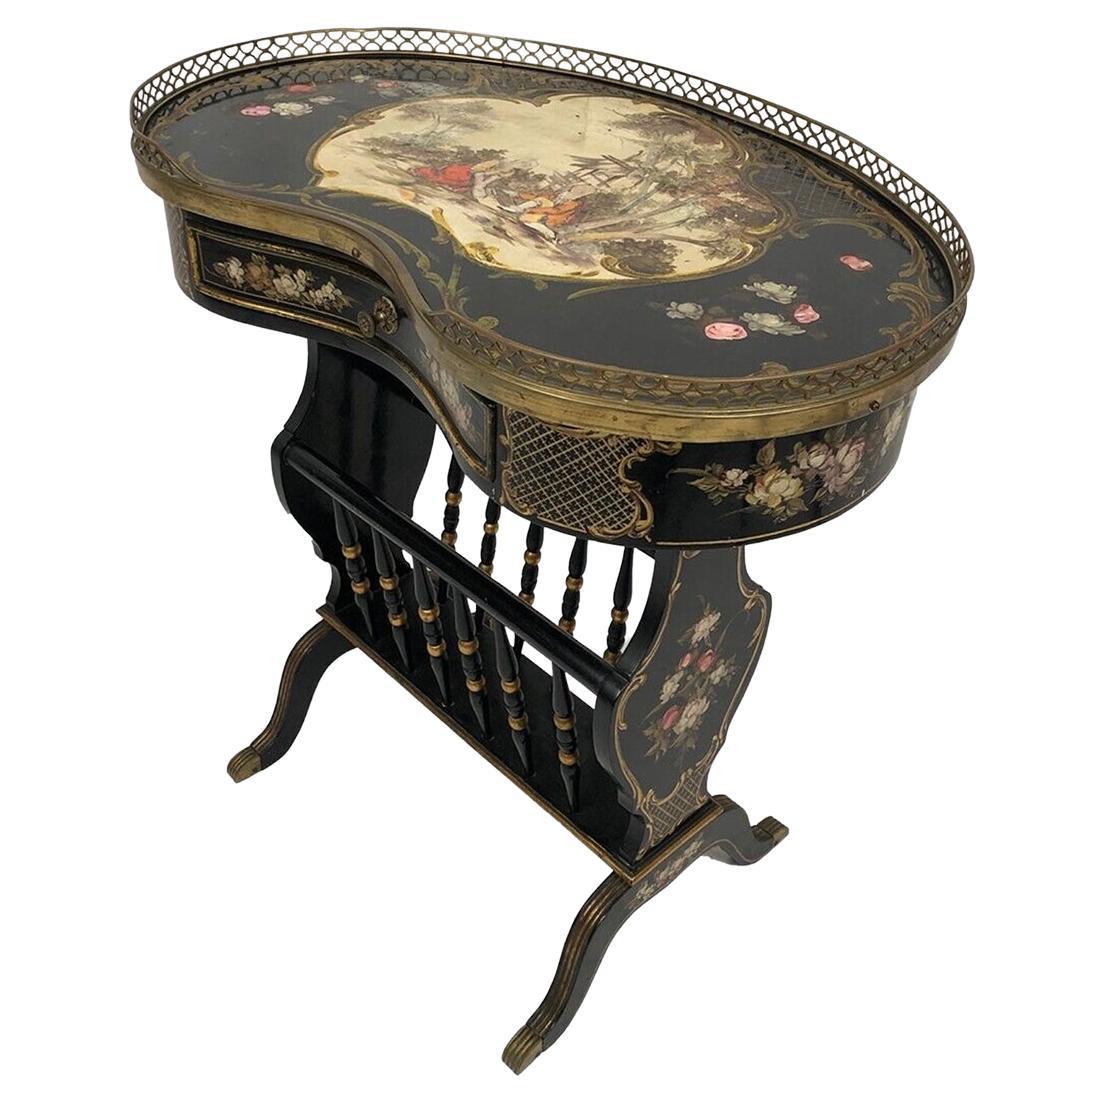 Petite table de forme rognon en bois laqué noir et riches décors peints